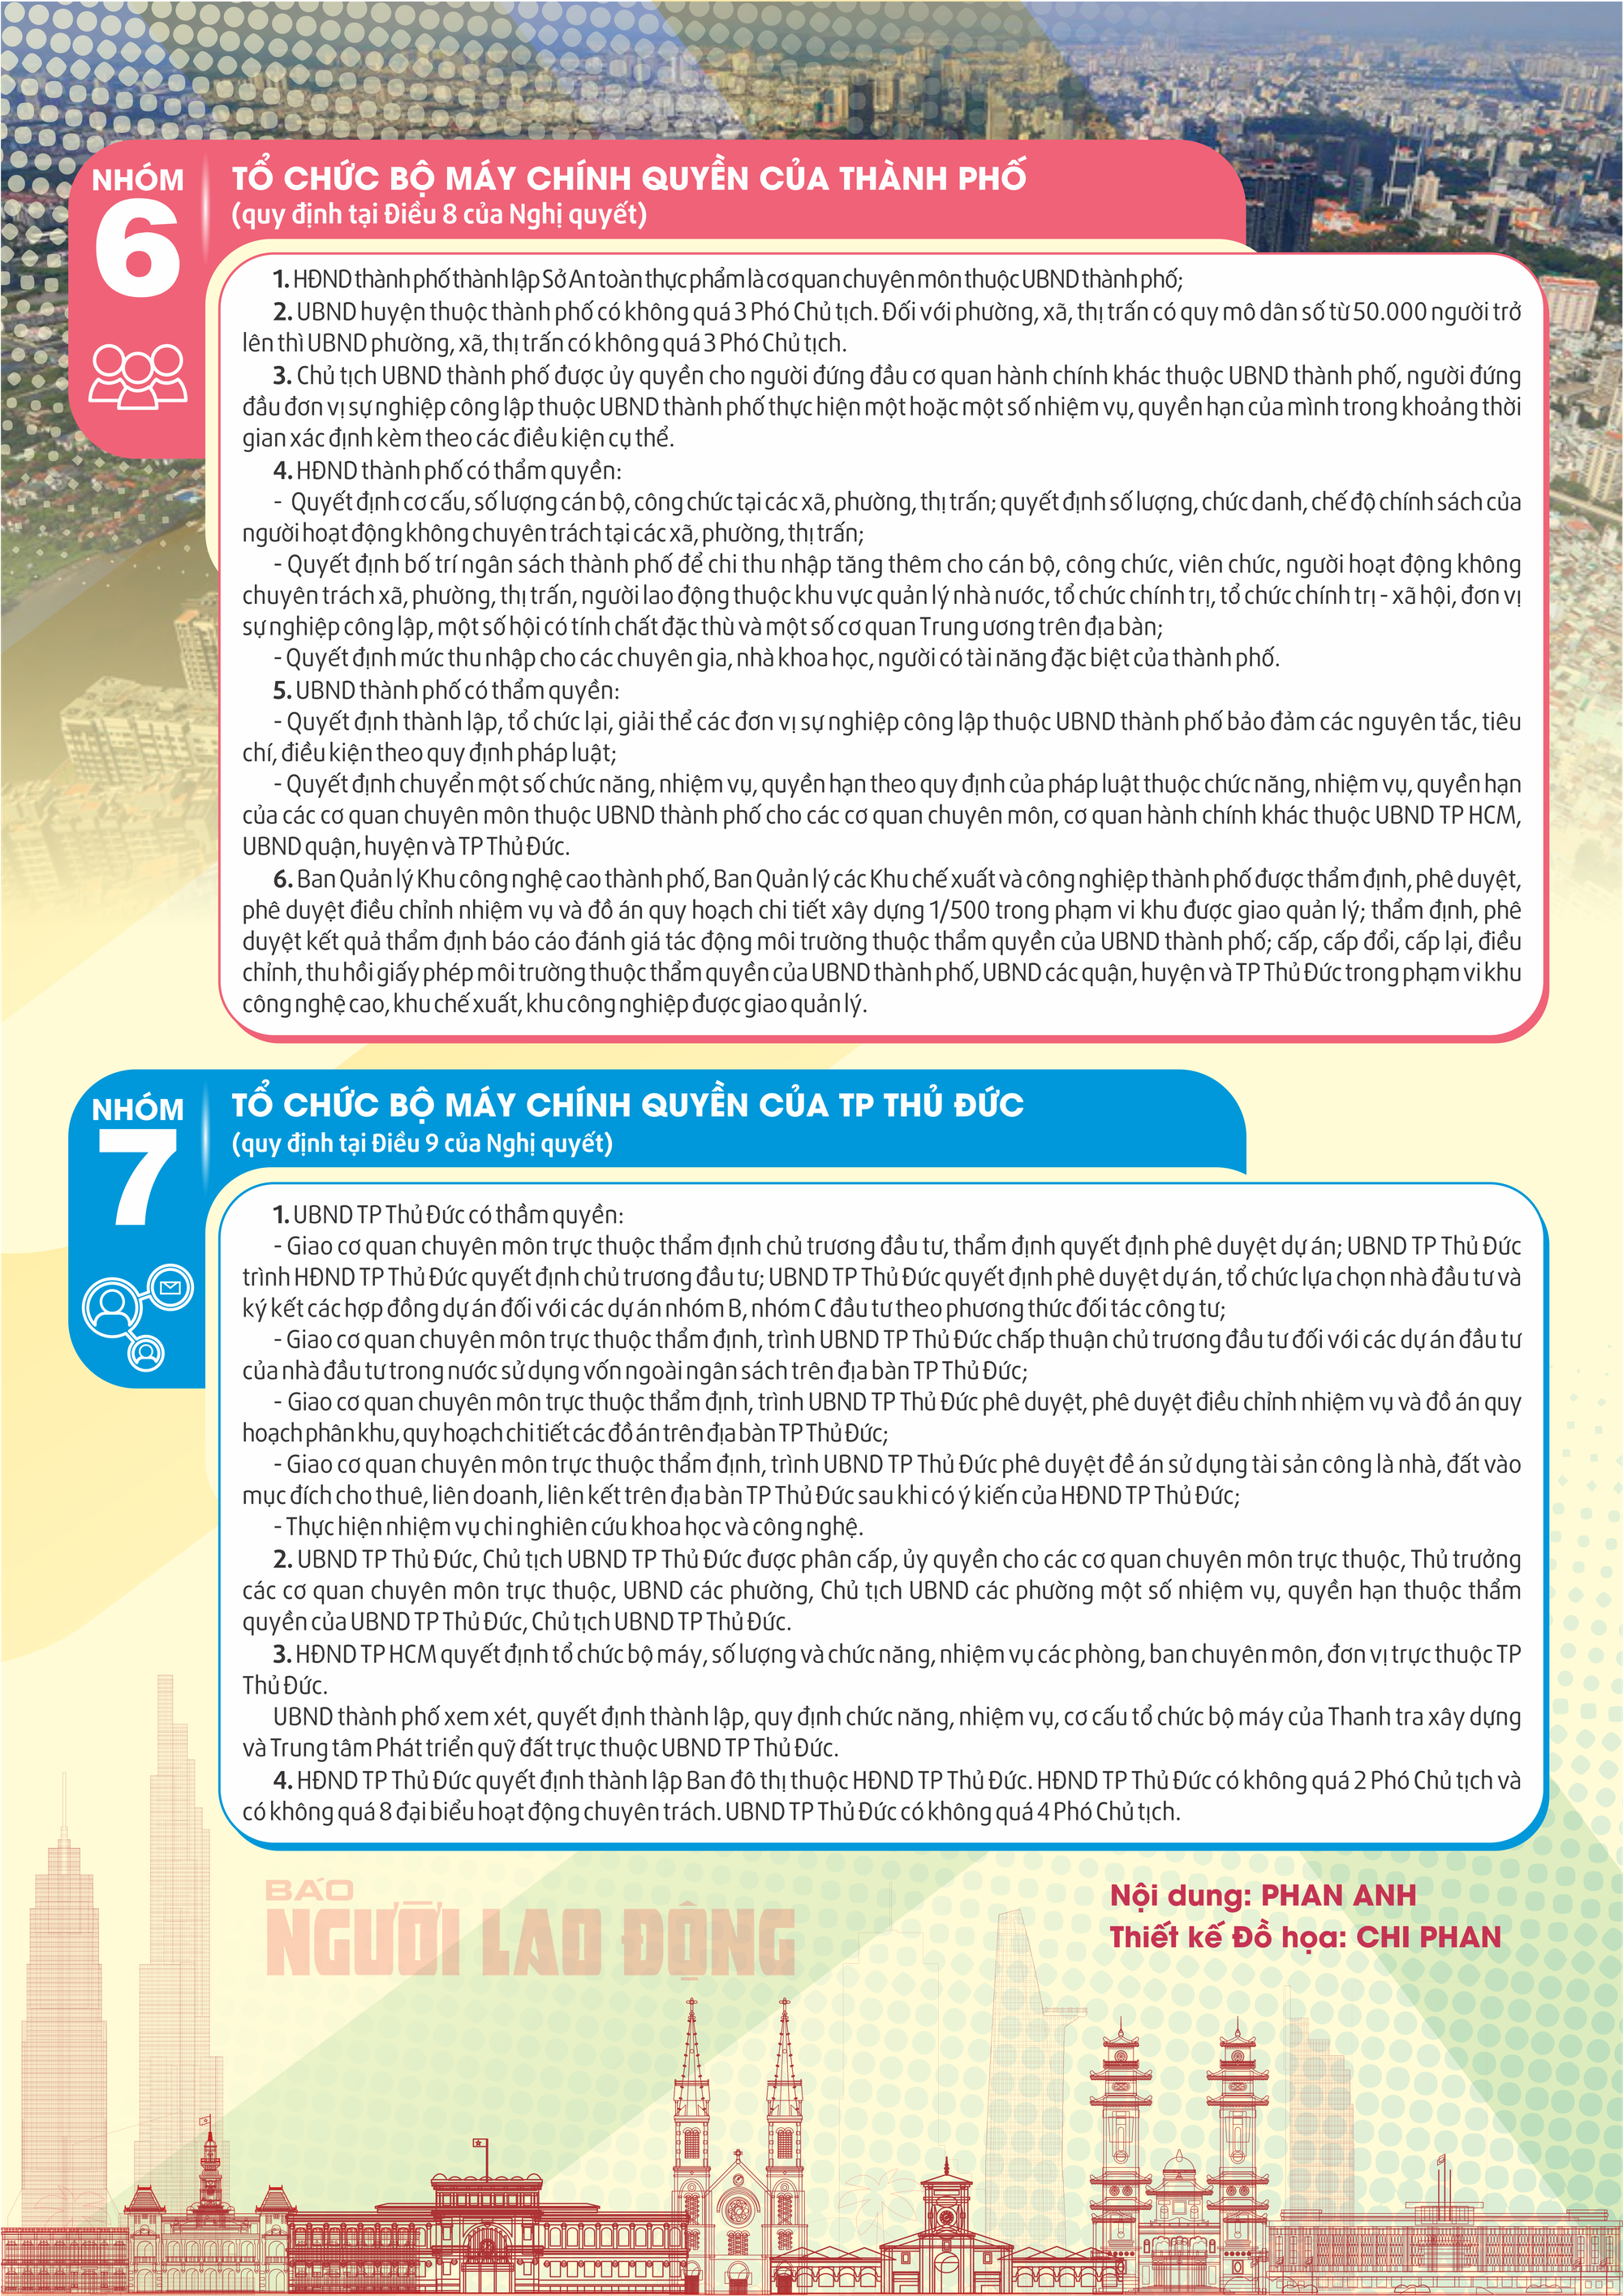 Infographic: “Cẩm nang” với 7 nhóm cơ chế, chính sách thí điểm phát triển TP HCM - Ảnh 3.